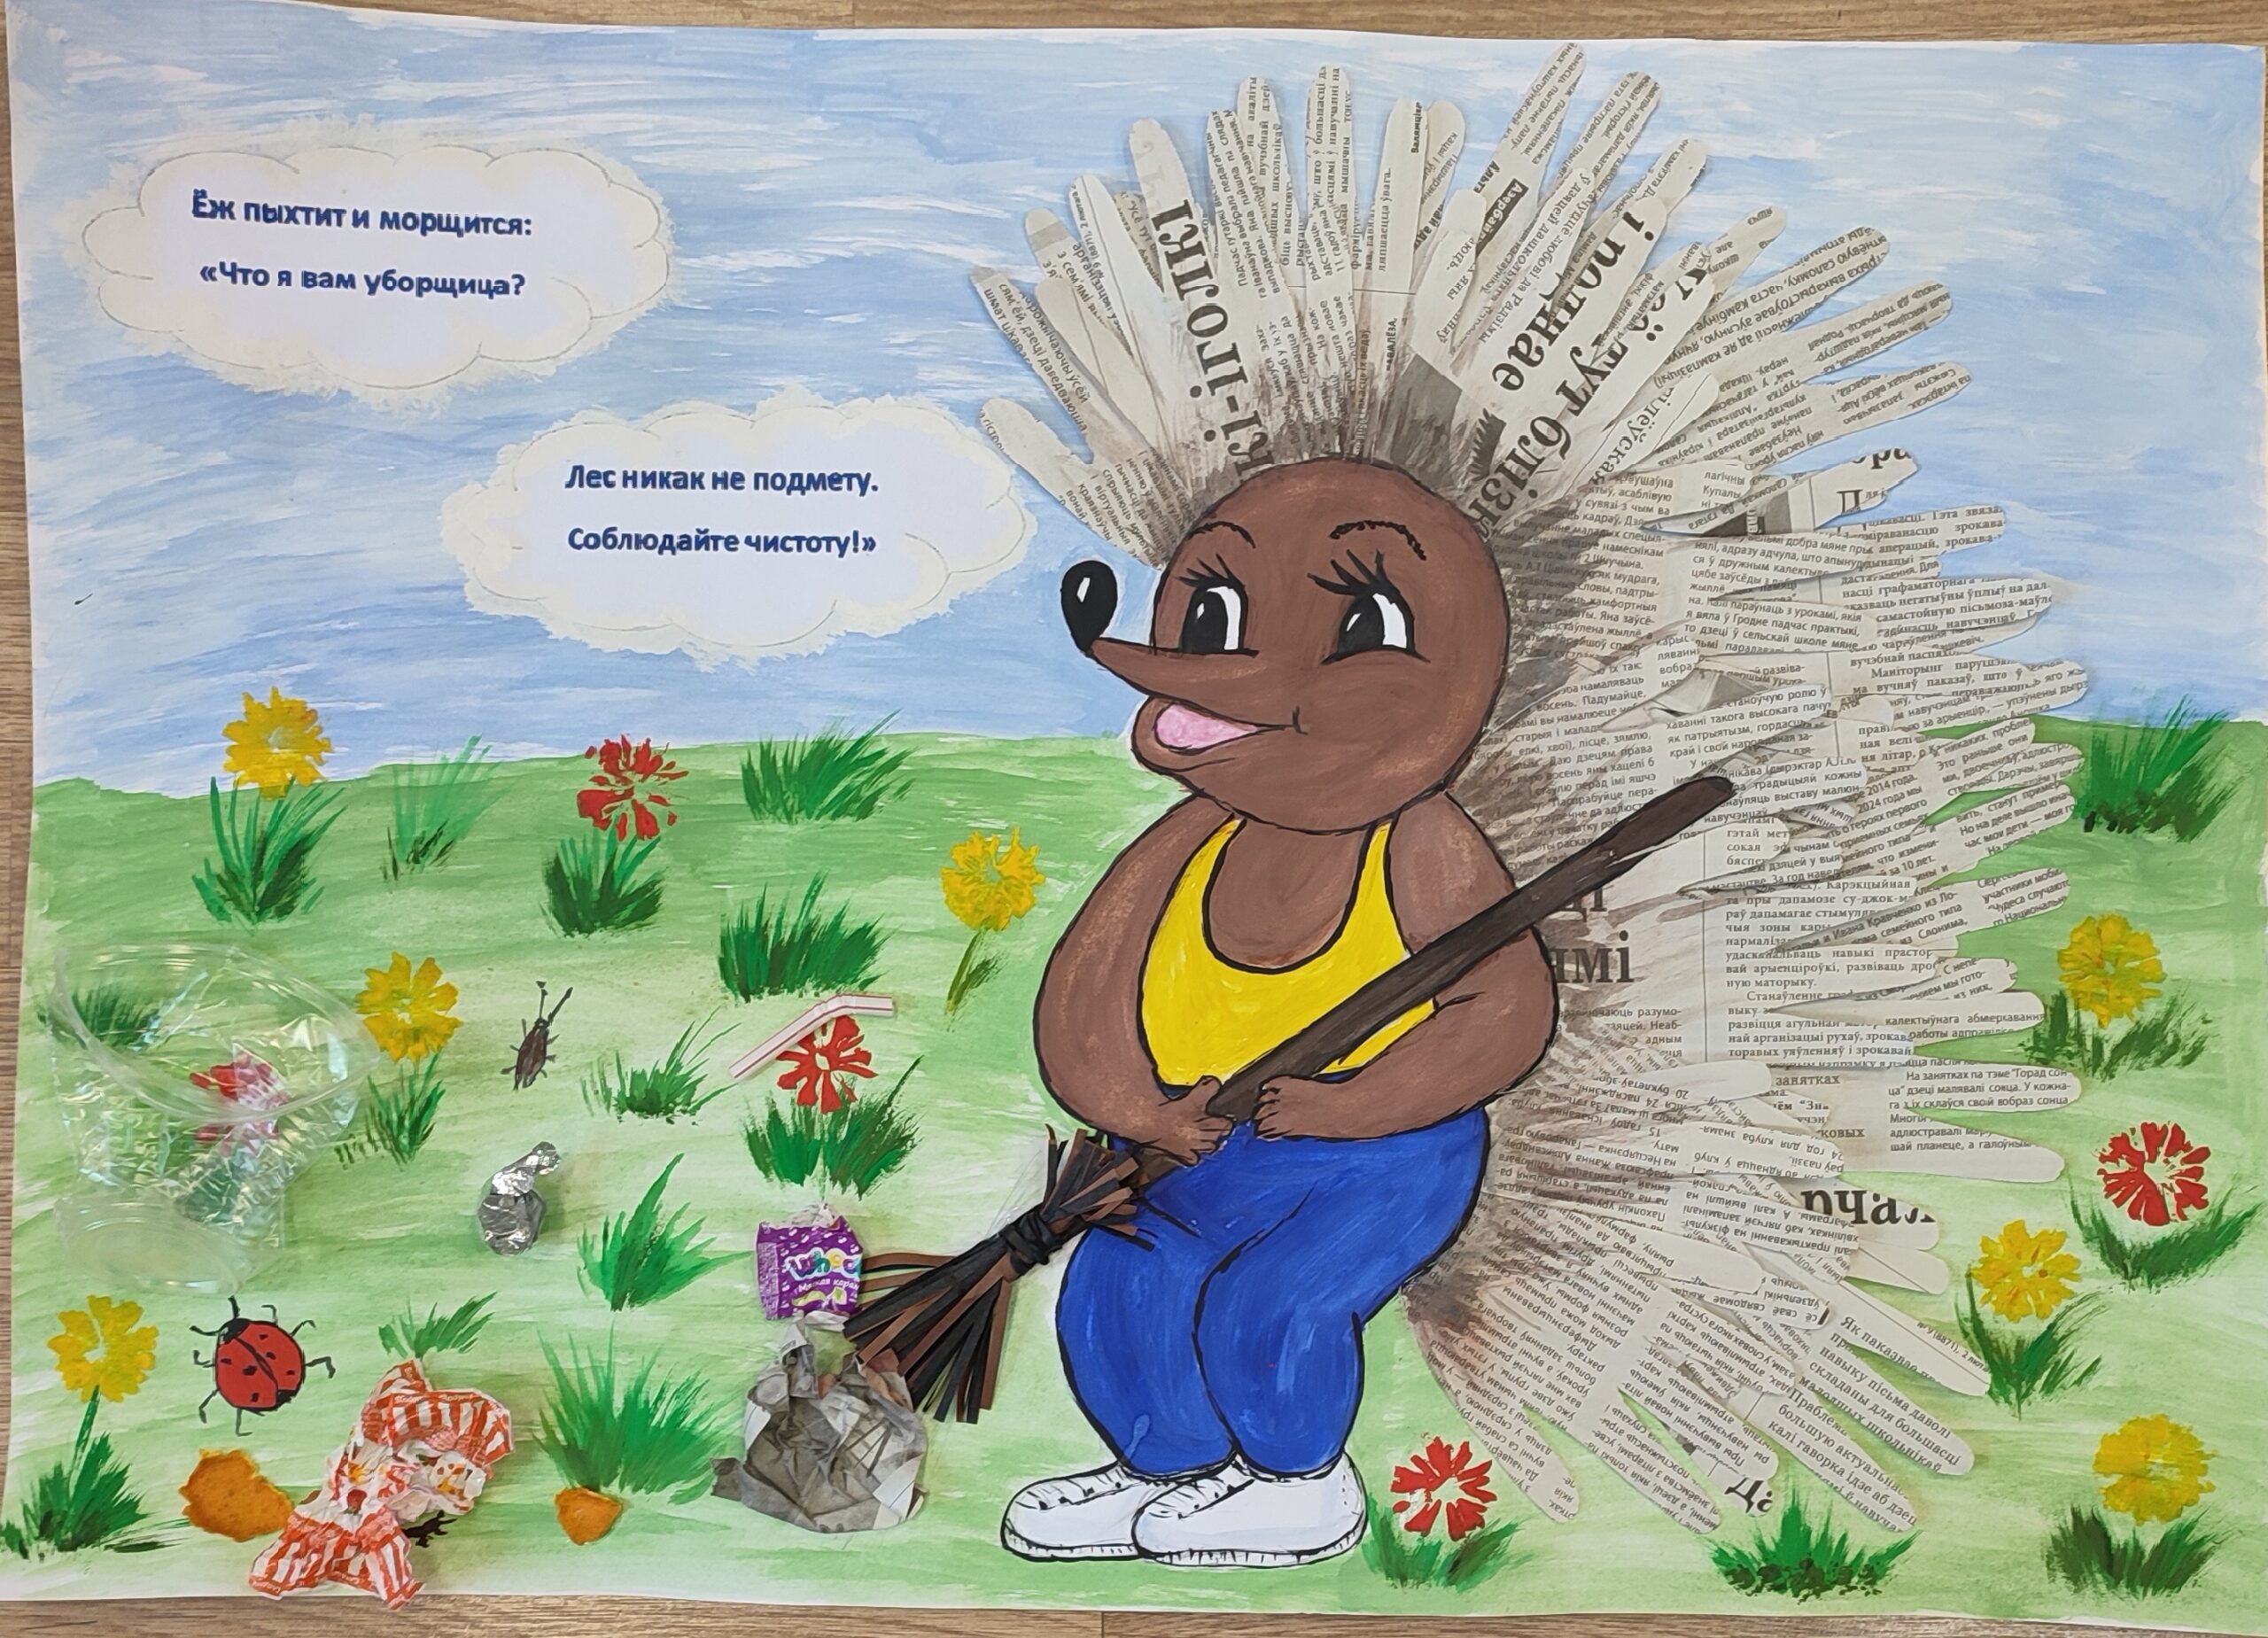 Определены победители конкурса на лучший детский рисунок на экологическую тематику